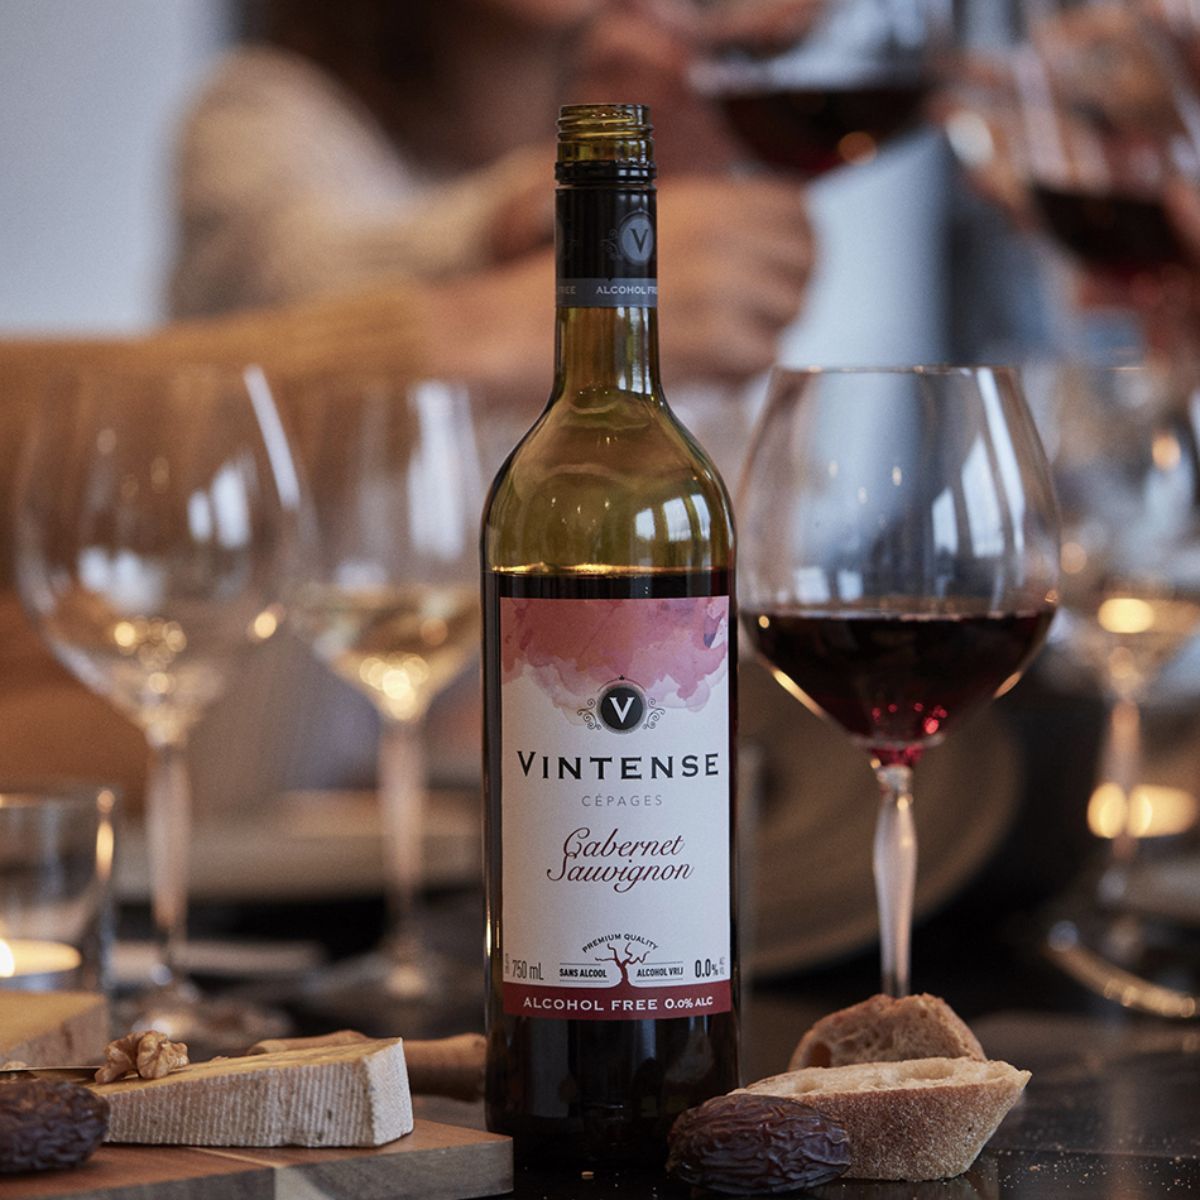 Vintense Cabernet Sauvignon - Non Alcoholic Red Wine